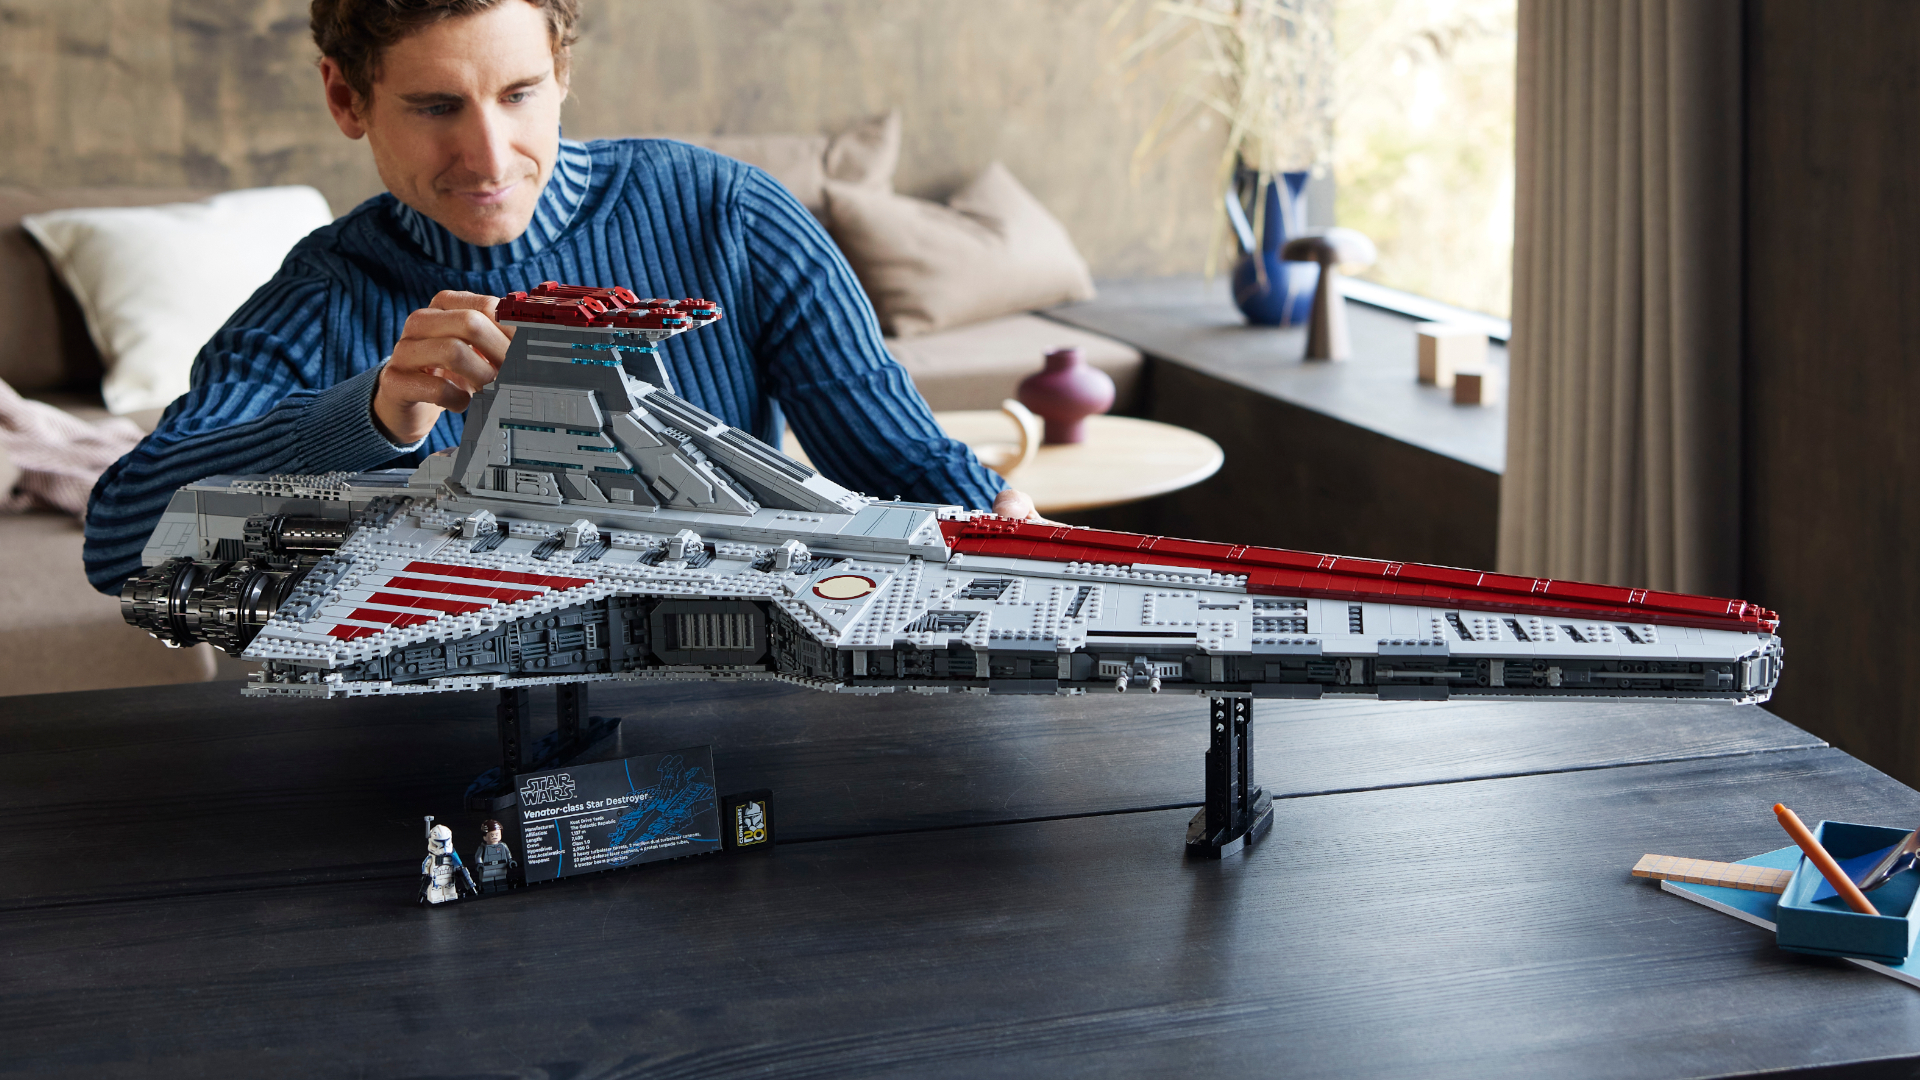 Lego Reveals 5,374-Piece Star Wars UCS Venator Attack Cruiser